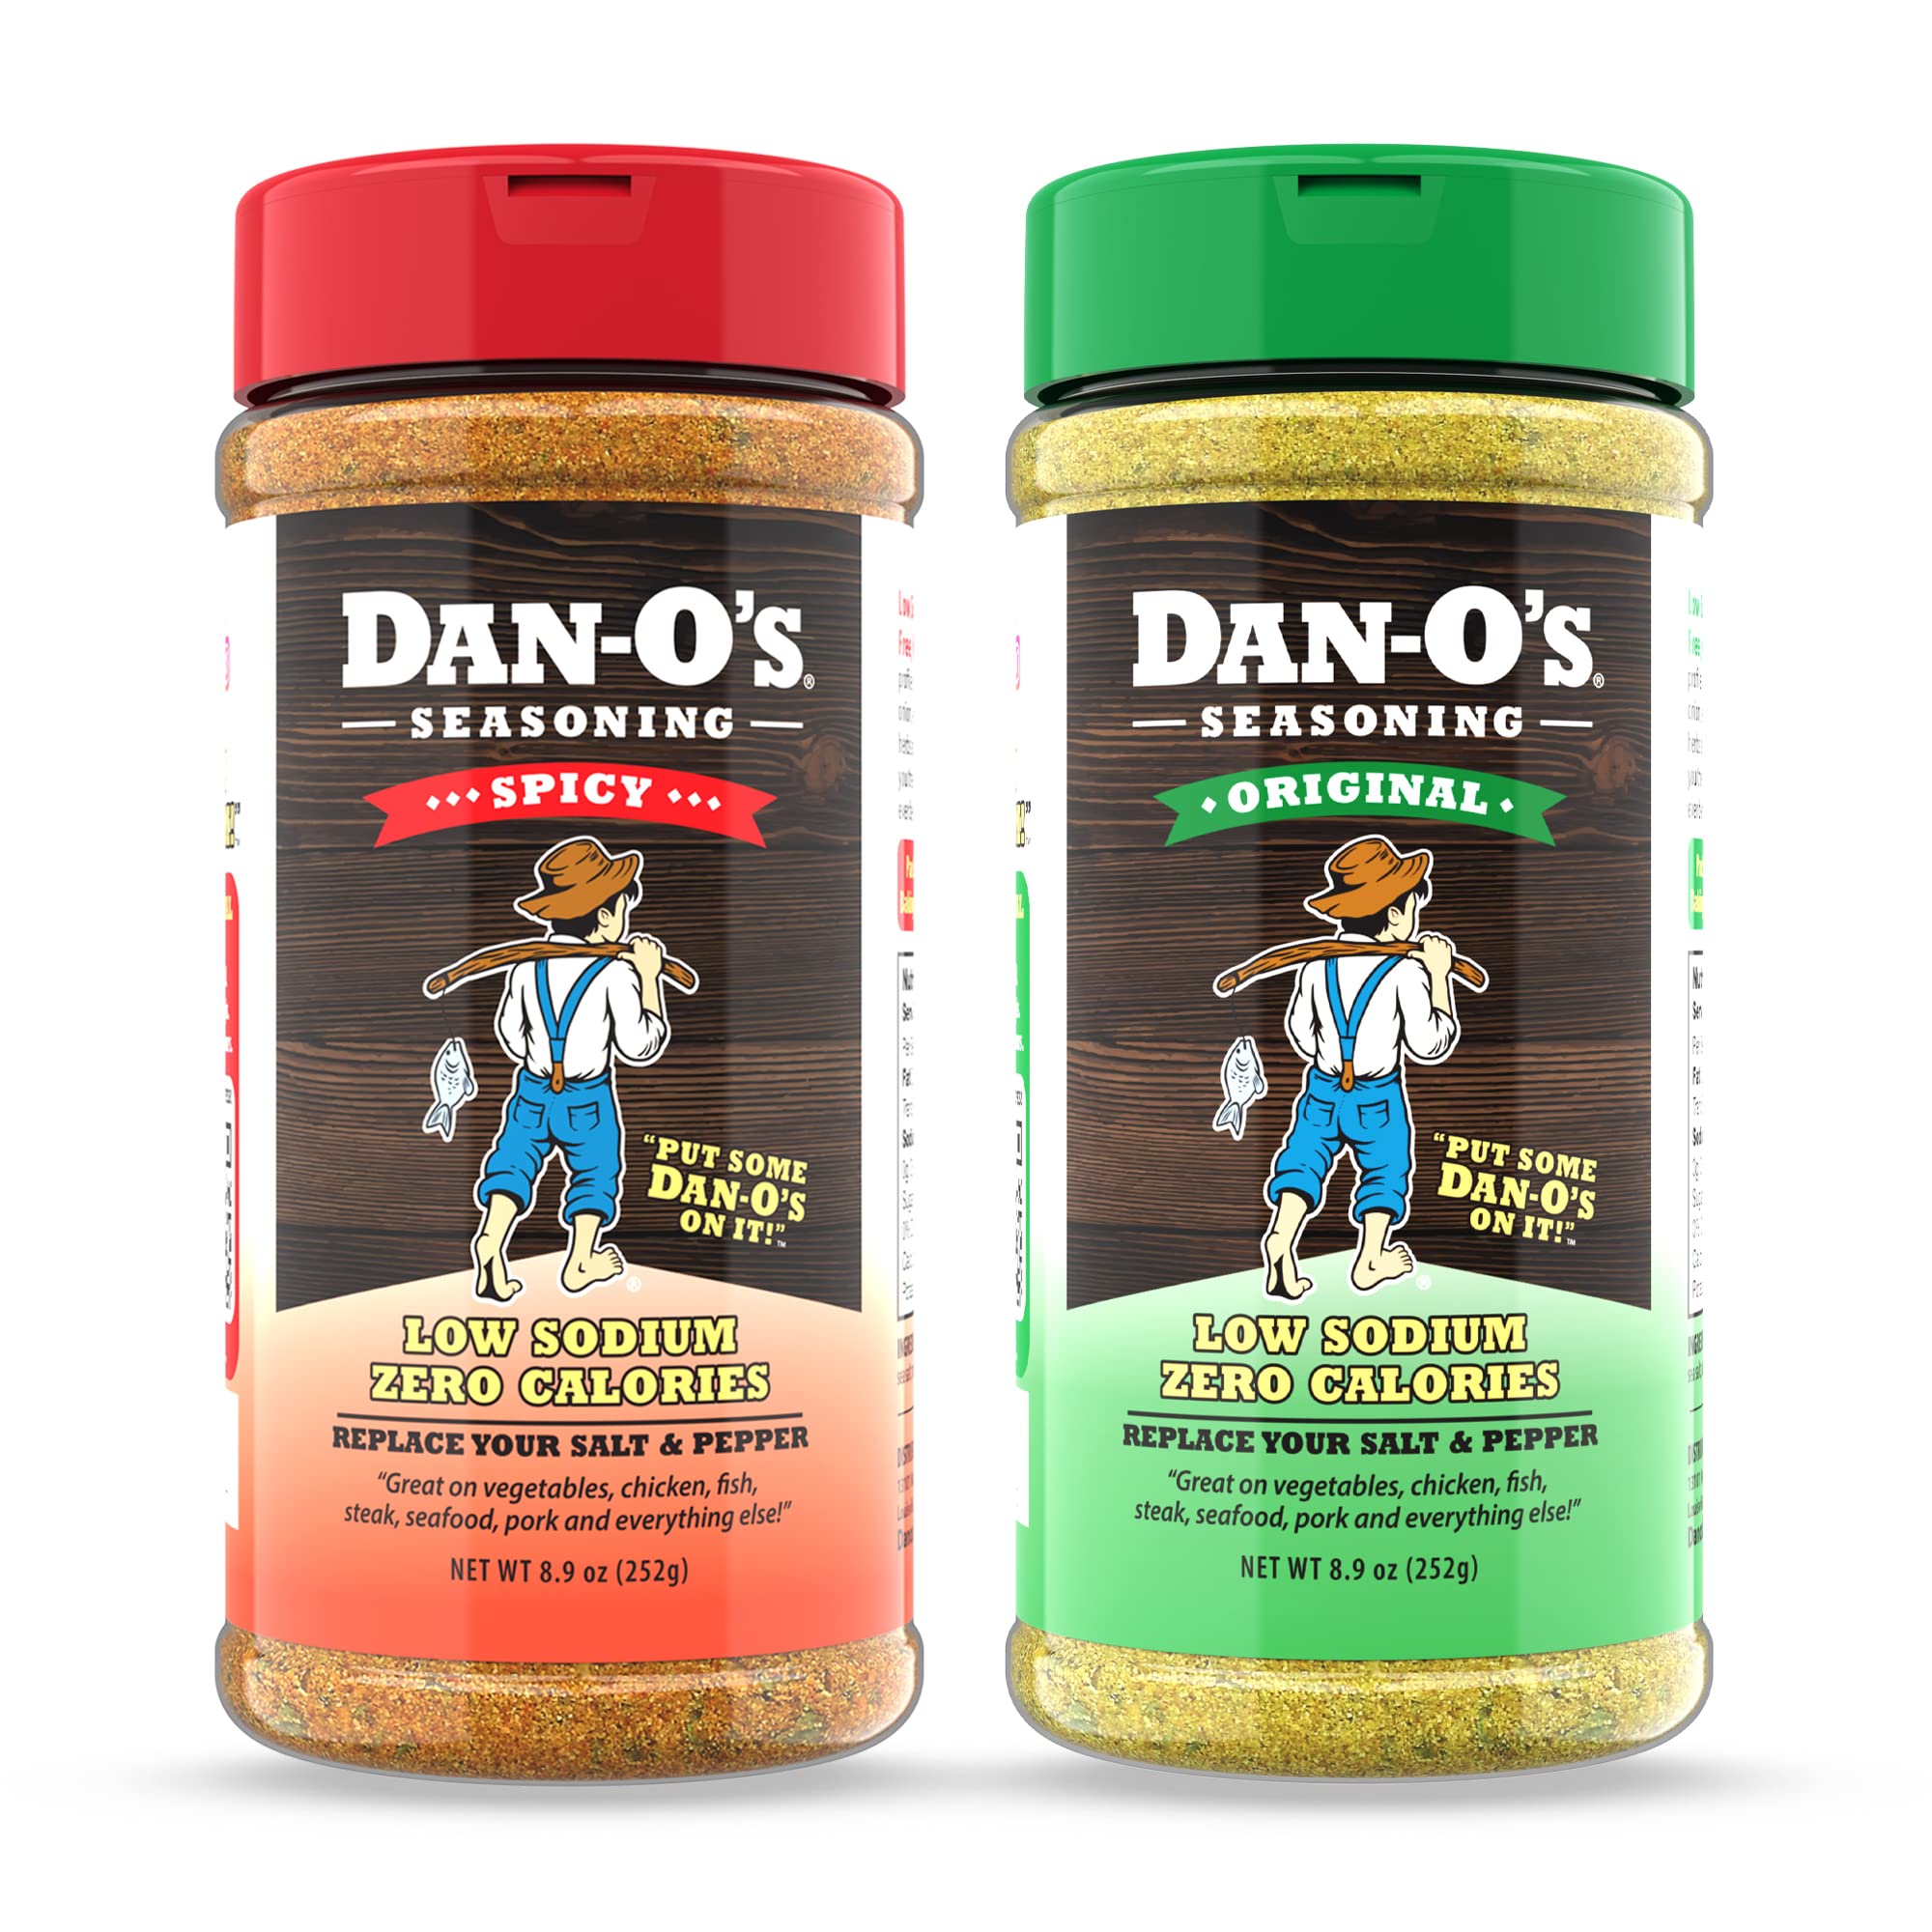 Dan-O's Seasoning 8.9 oz Starter Combo - 2 Pack (Original & Spicy), All-Natural, Sugar-Free, Keto, All-Purpose Seasonings